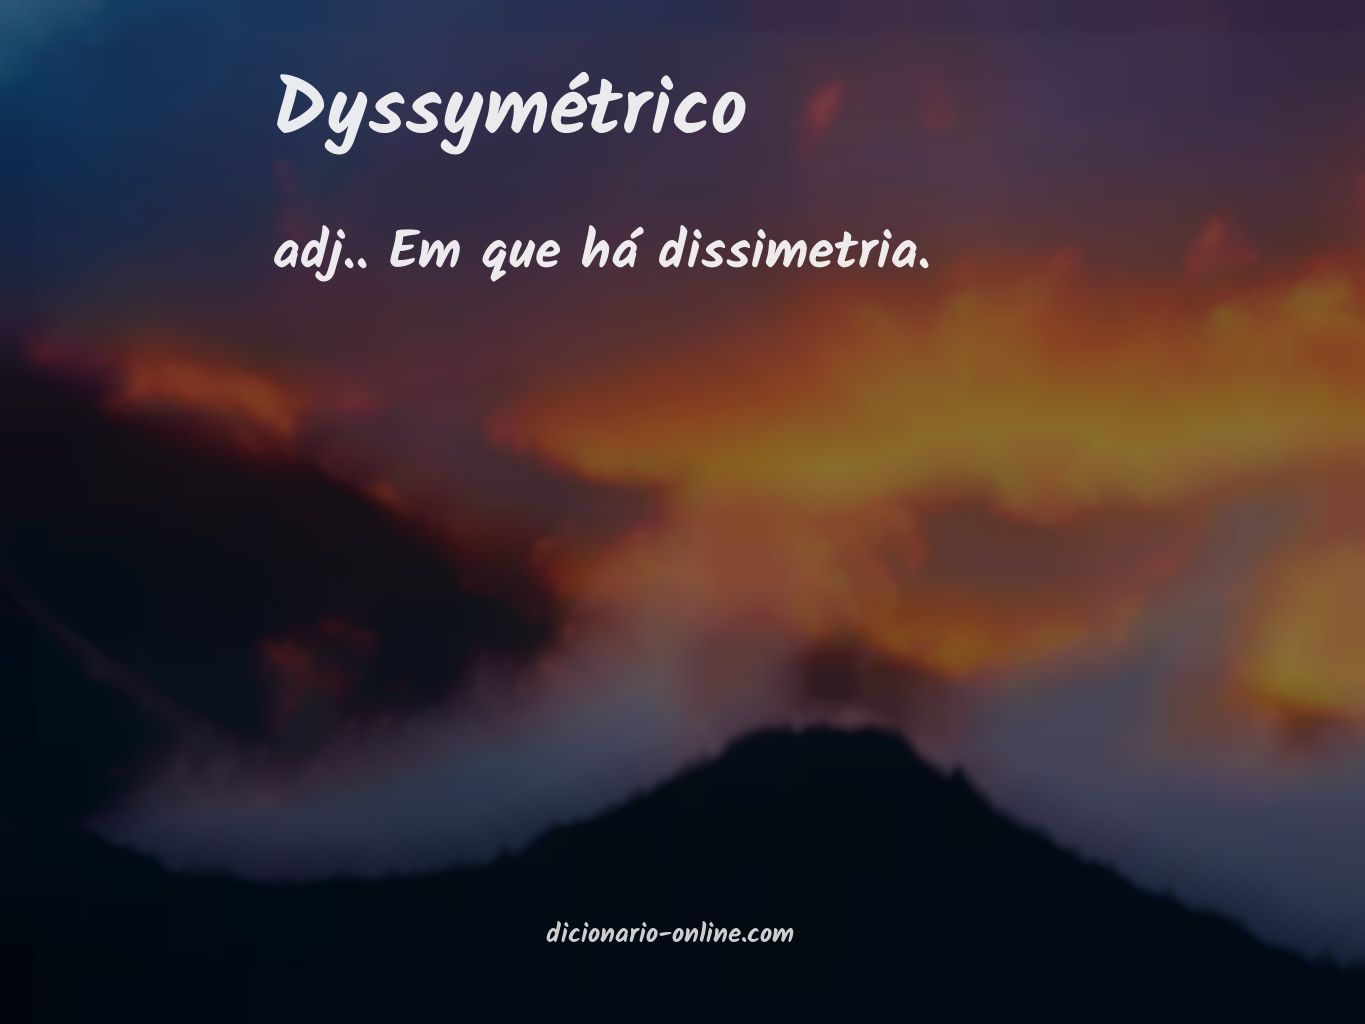 Significado de dyssymétrico